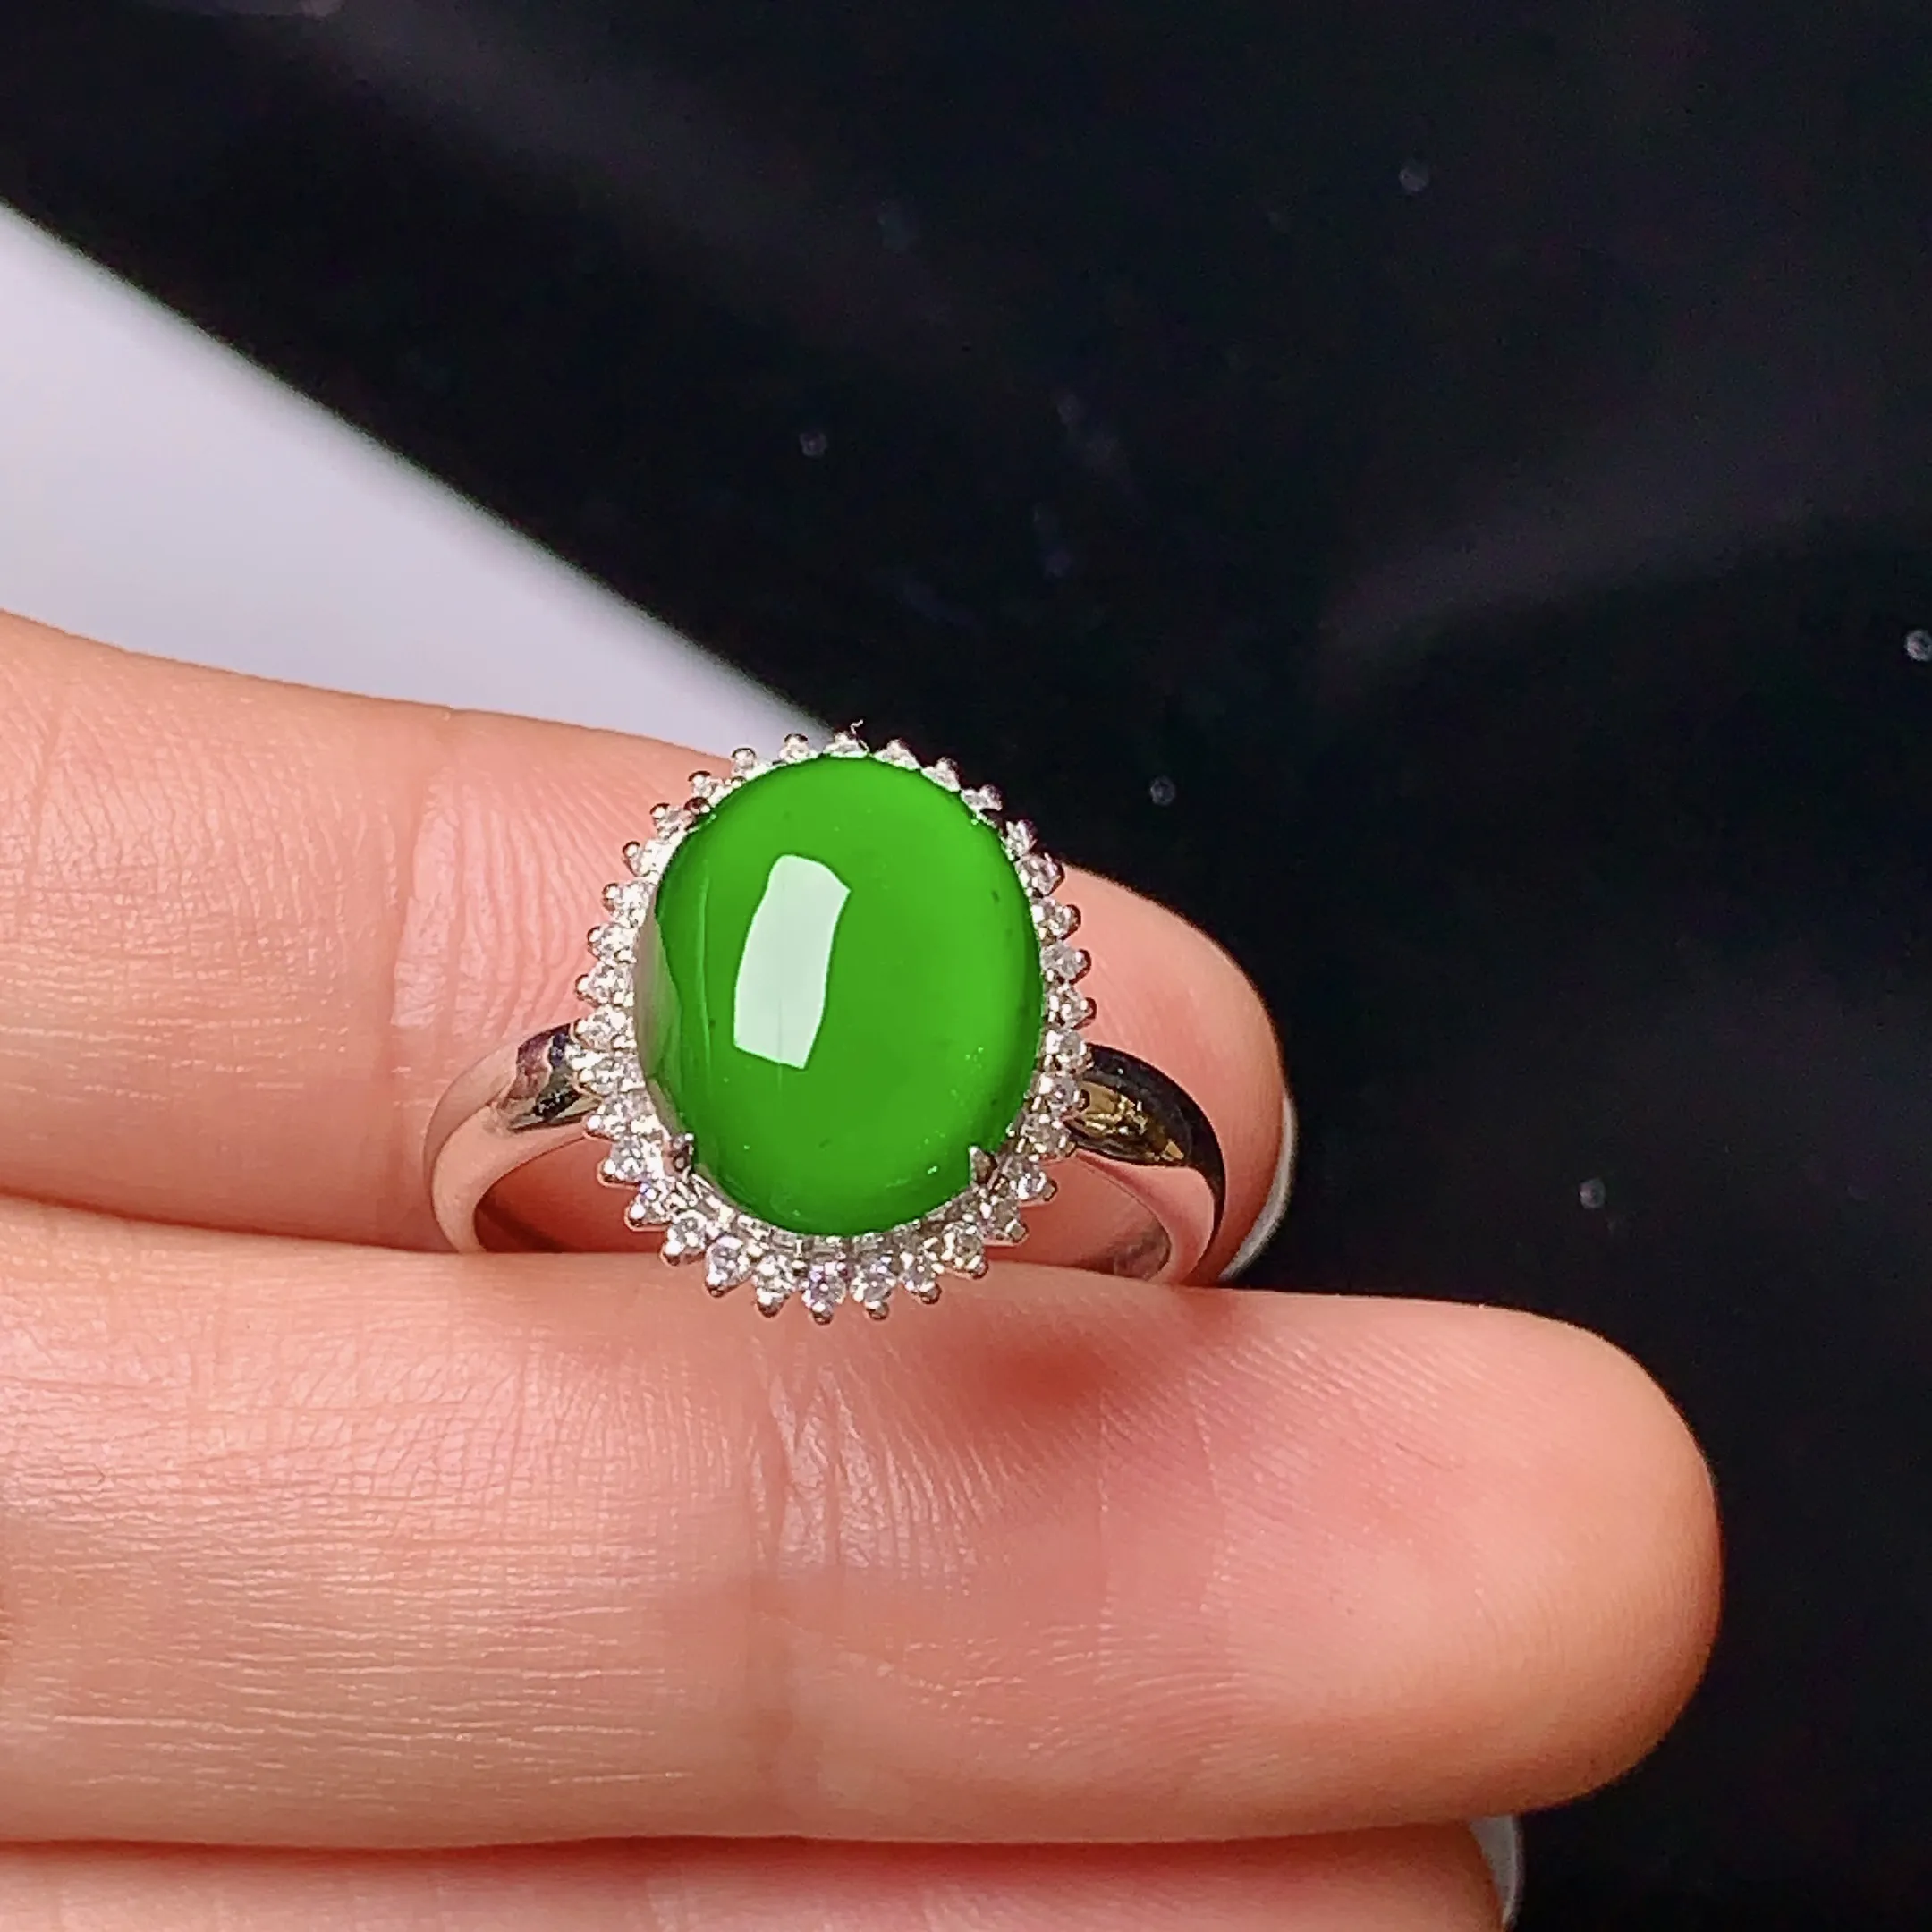 18k金钻镶嵌满绿蛋面戒指 玉质细腻 色泽艳丽 款式新颖 圈口1 4 整体尺寸14.8*12.1*8